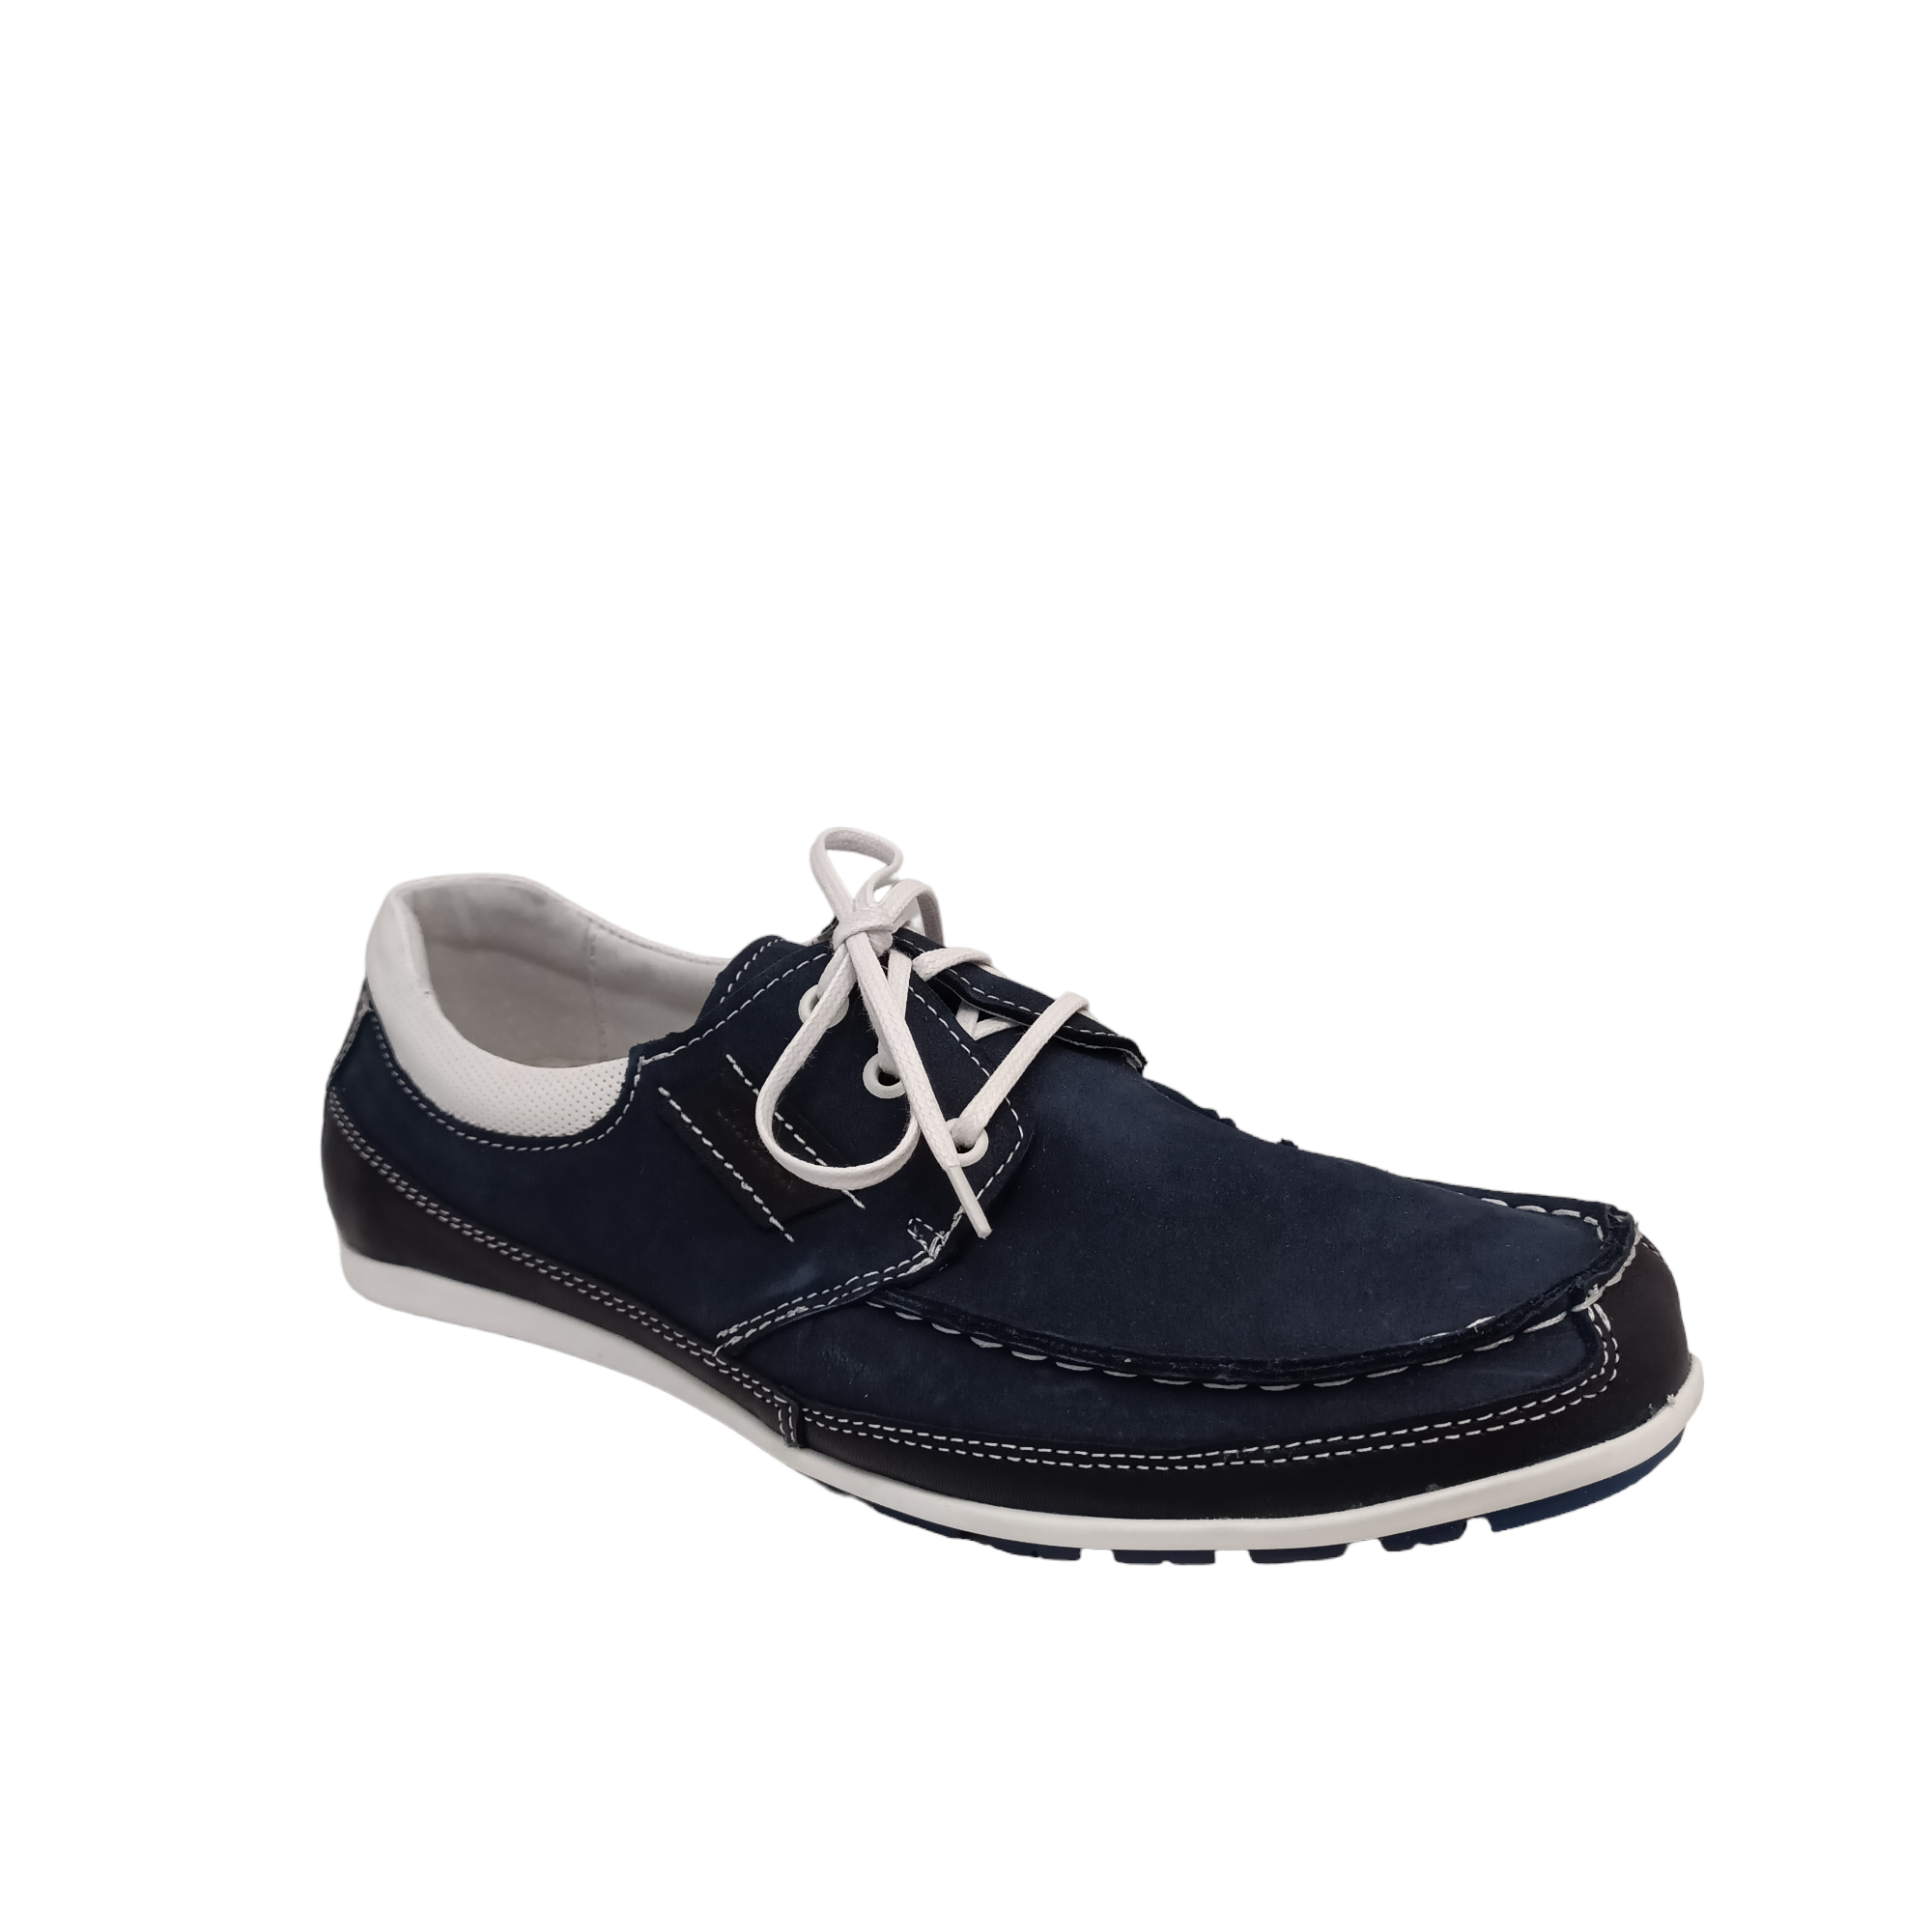 Kacper 1-0808 - shoe&amp;me - Kacper - Shoe - Mens, Shoes, Summer